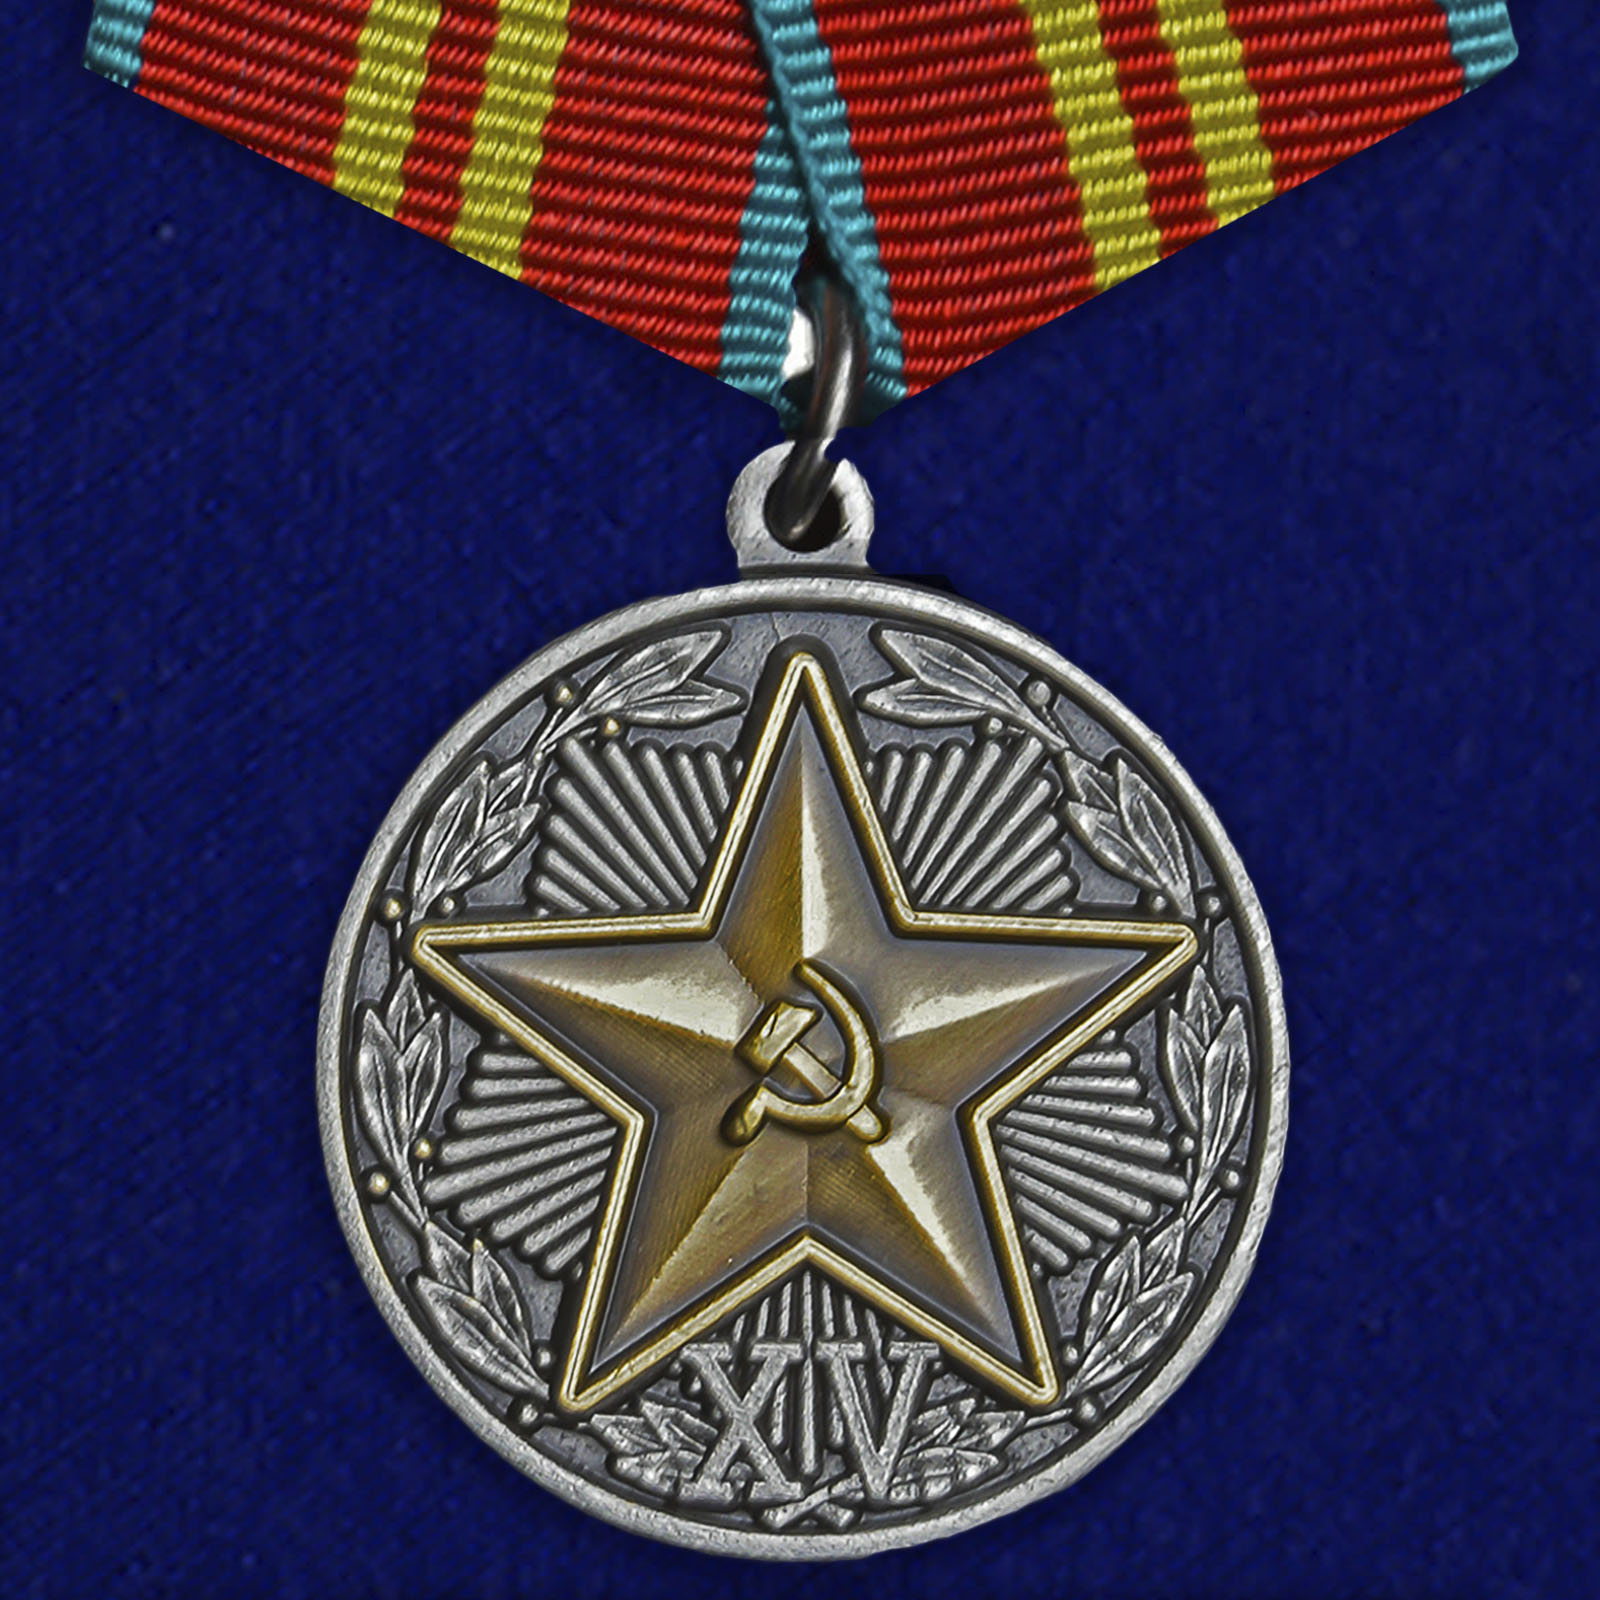 Медаль "За безупречную службу" КГБ 2 степени